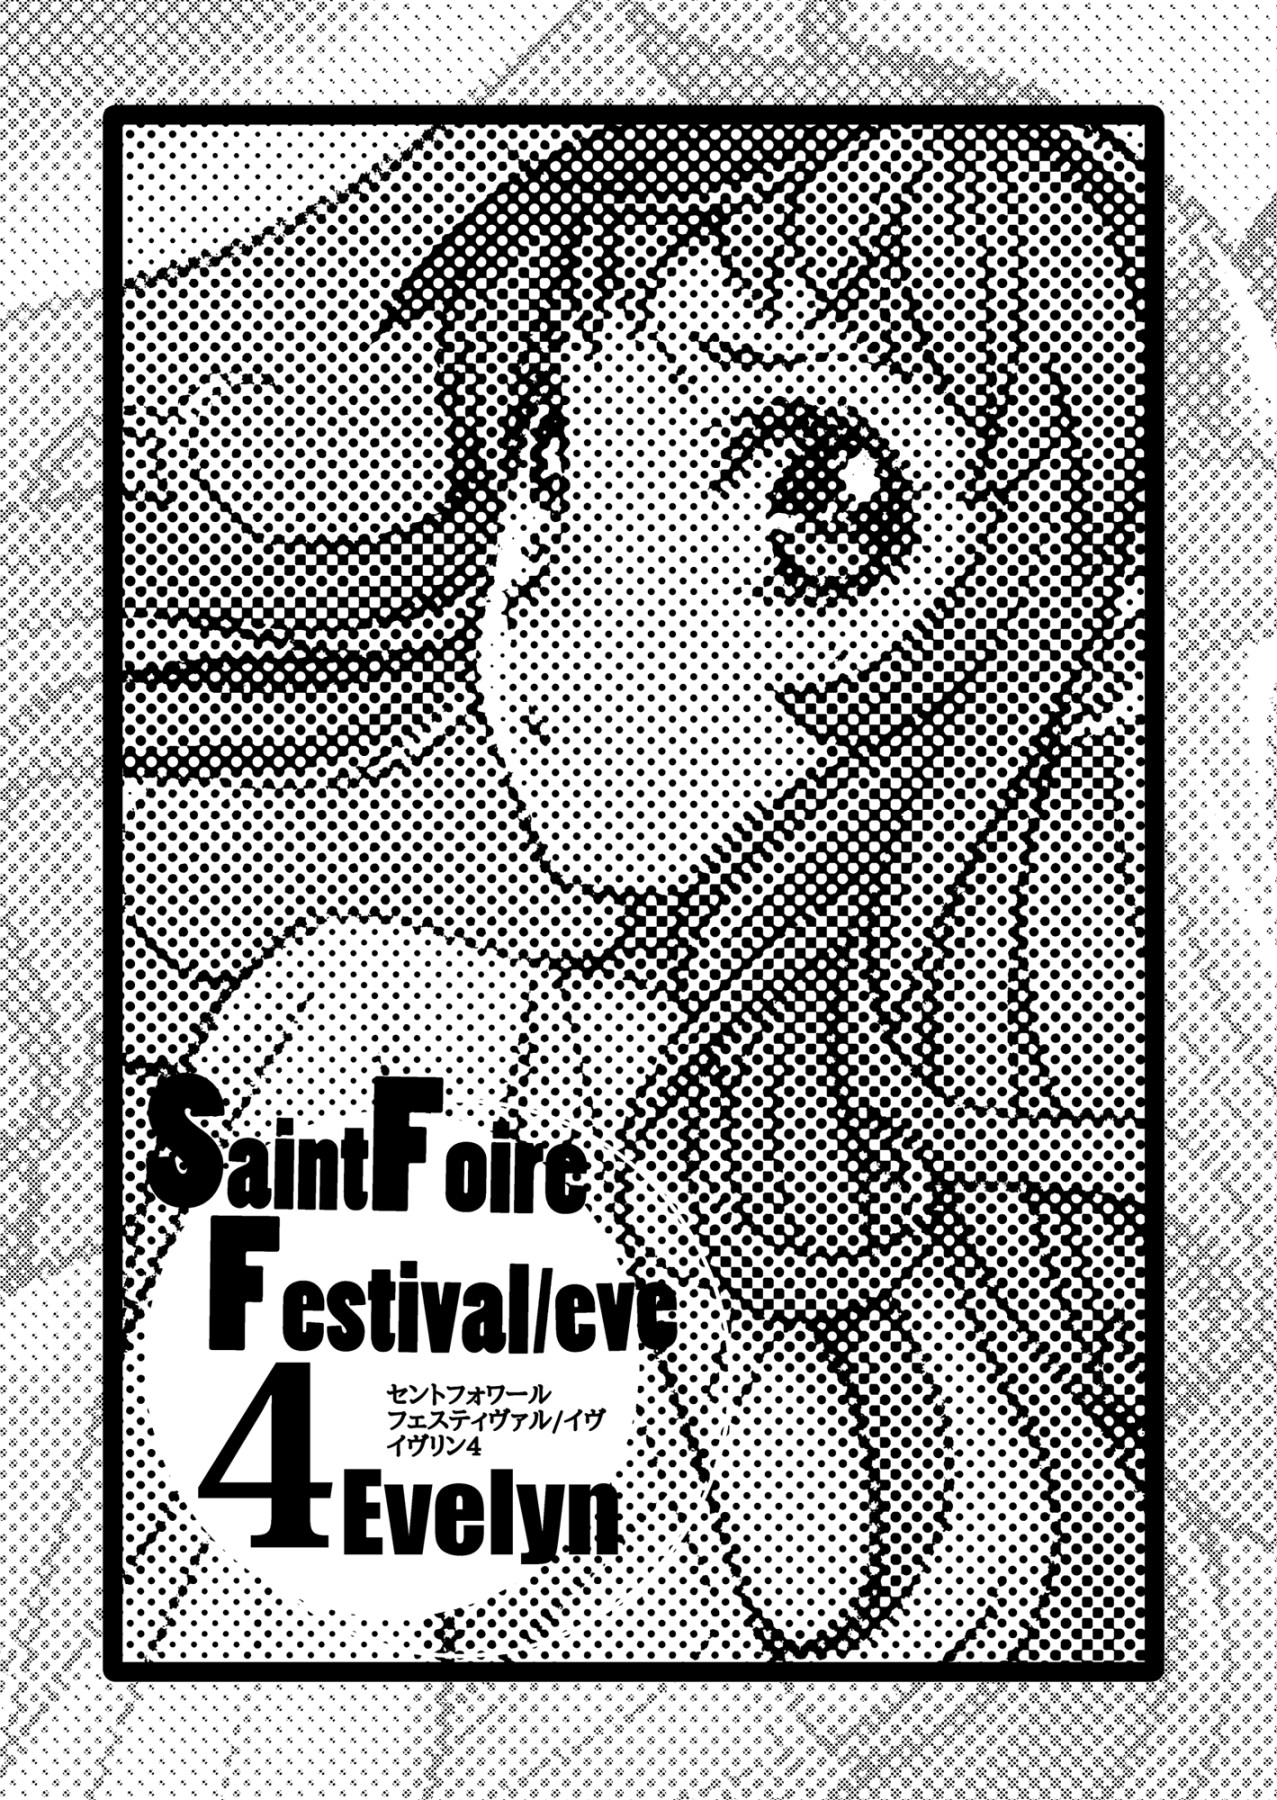 Hentai Manga Comic-Saint Foire Festival/Eve Evelyn:4-Read-2